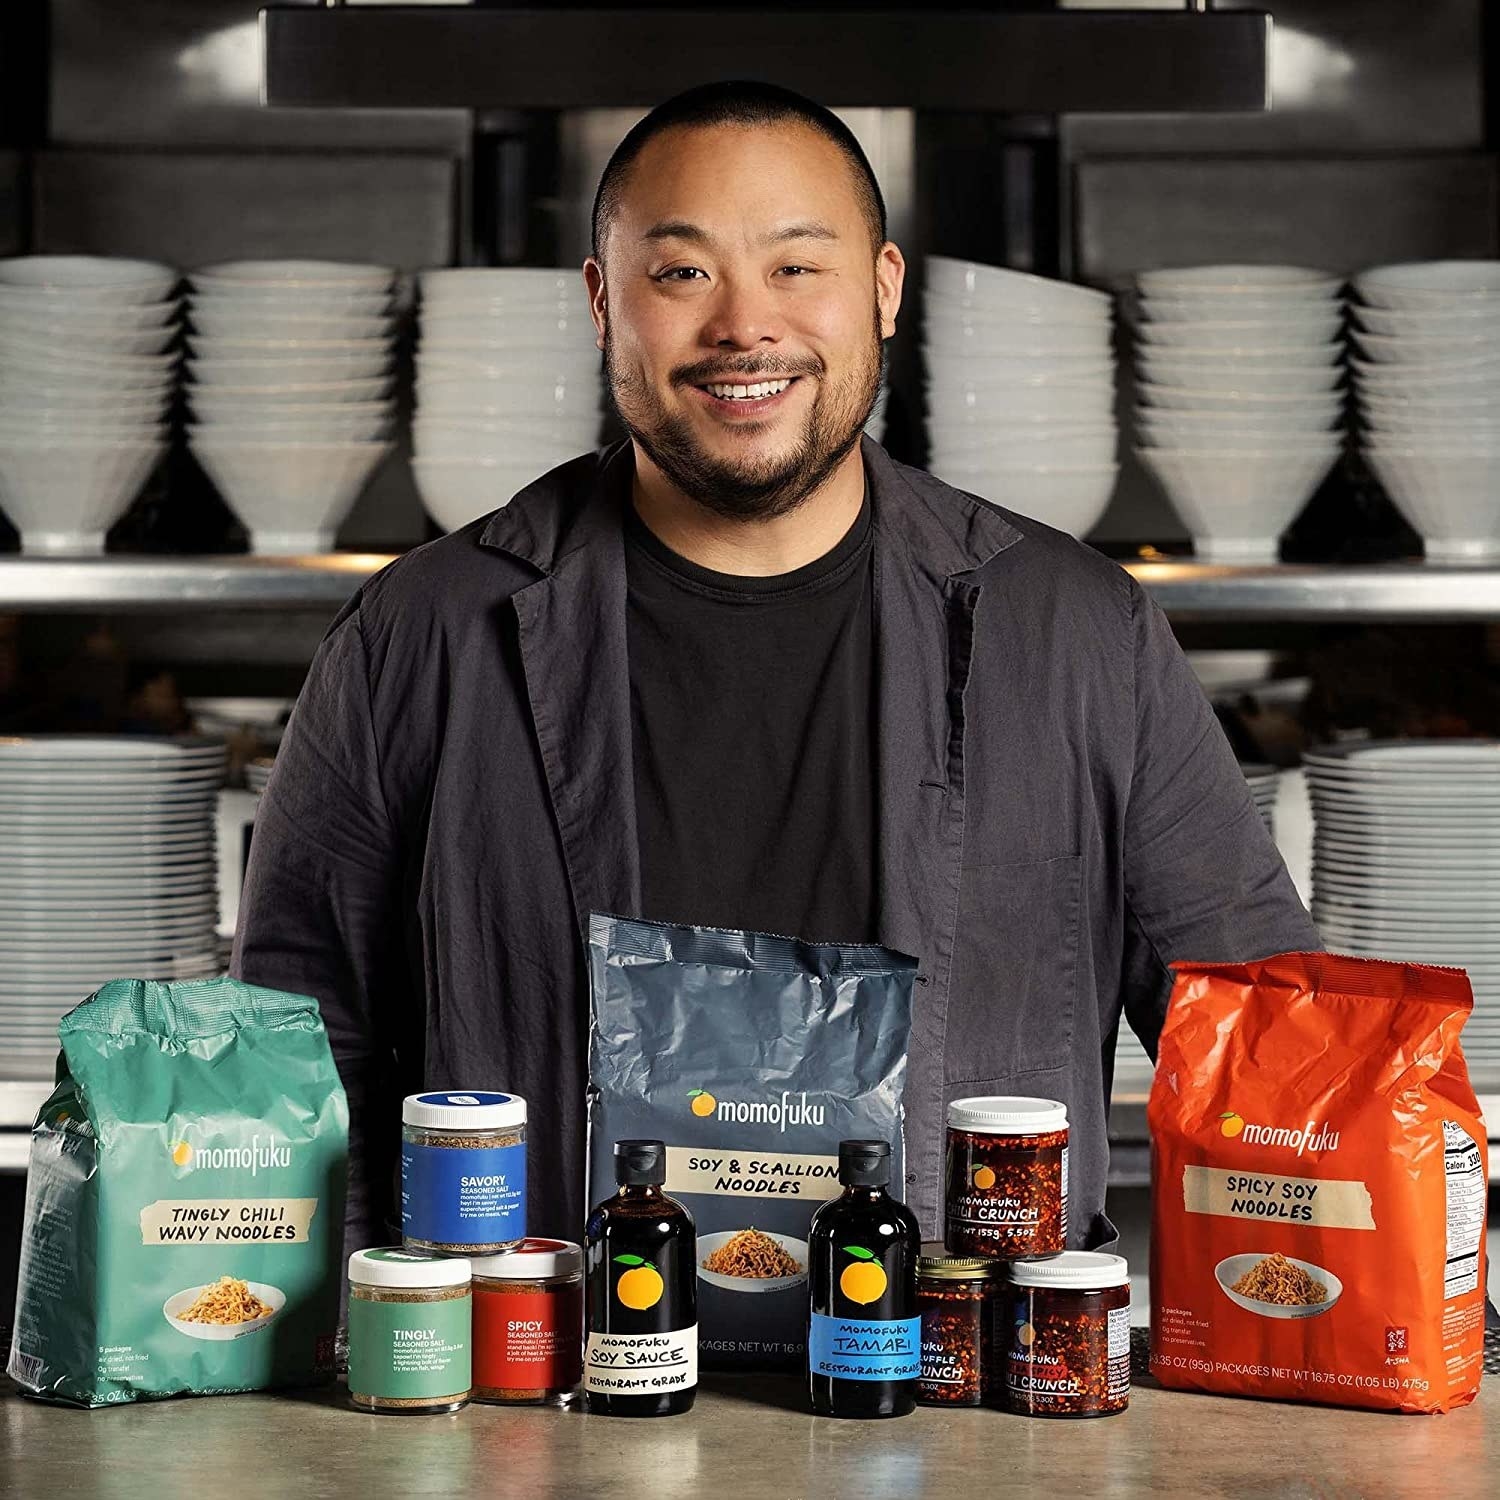 Chef David Chang standing behind various Momofoku products.